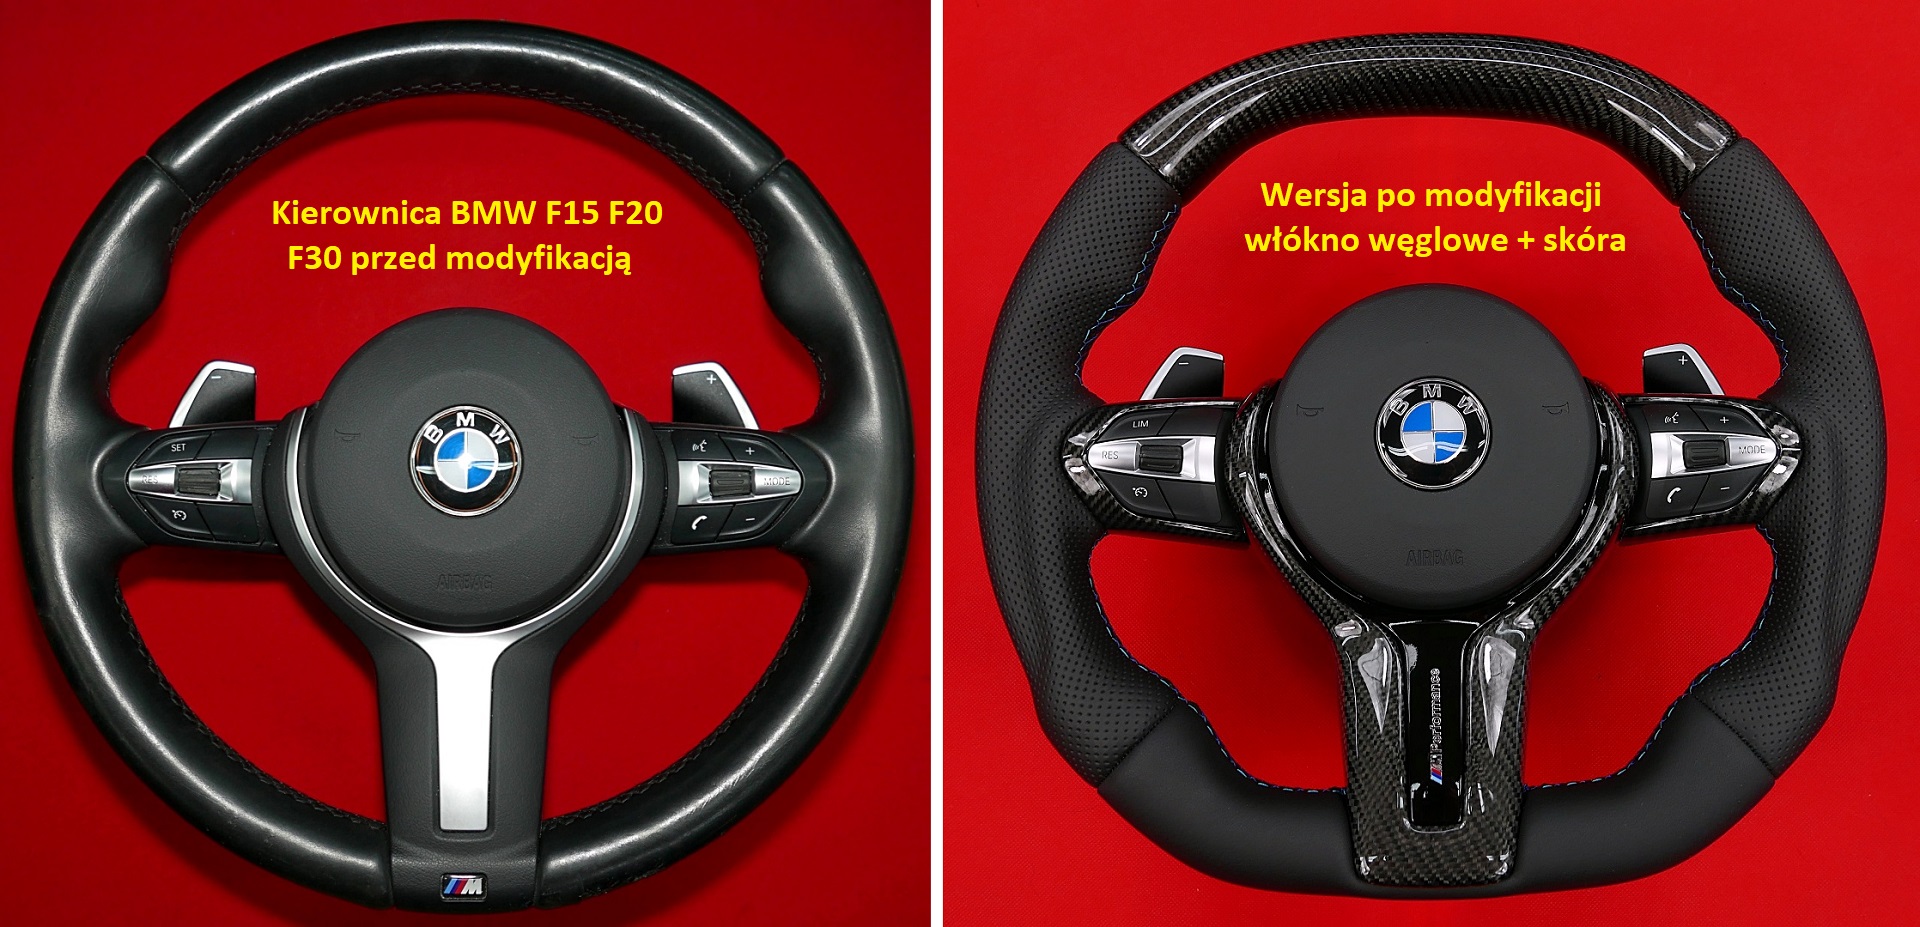 carbon fiber steering wheel kierownica bmw włókno węglowe